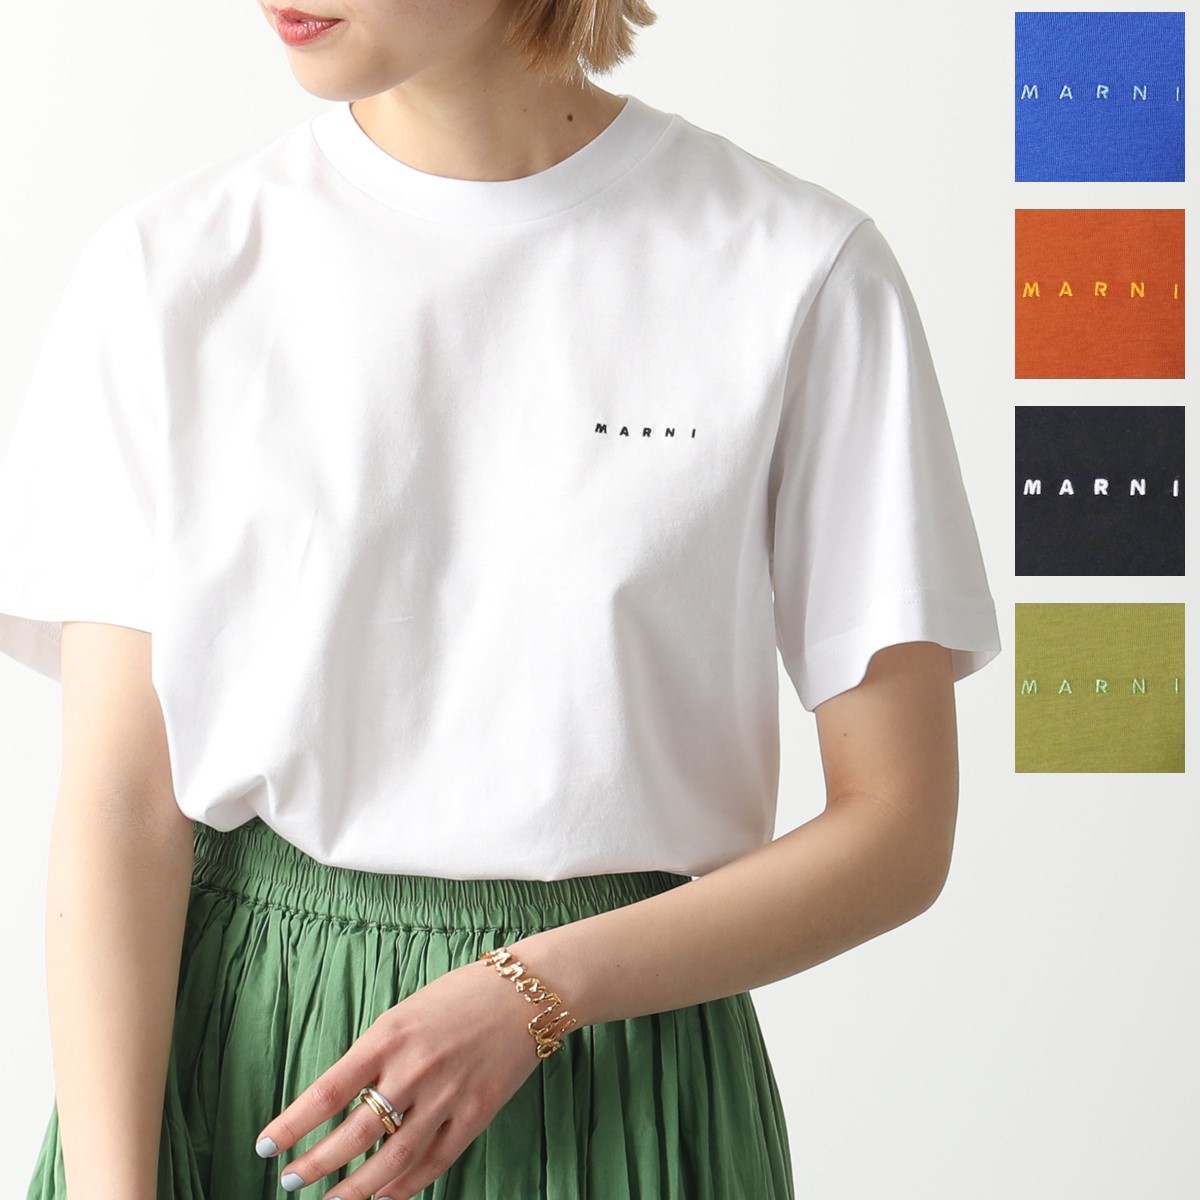 MARNI マルニ Tシャツ HUMU0170X1 UTCZ57 レディース コットン ちびロゴT 刺繍 クルーネック 半袖 カラー5色 |  インポートセレクト musee